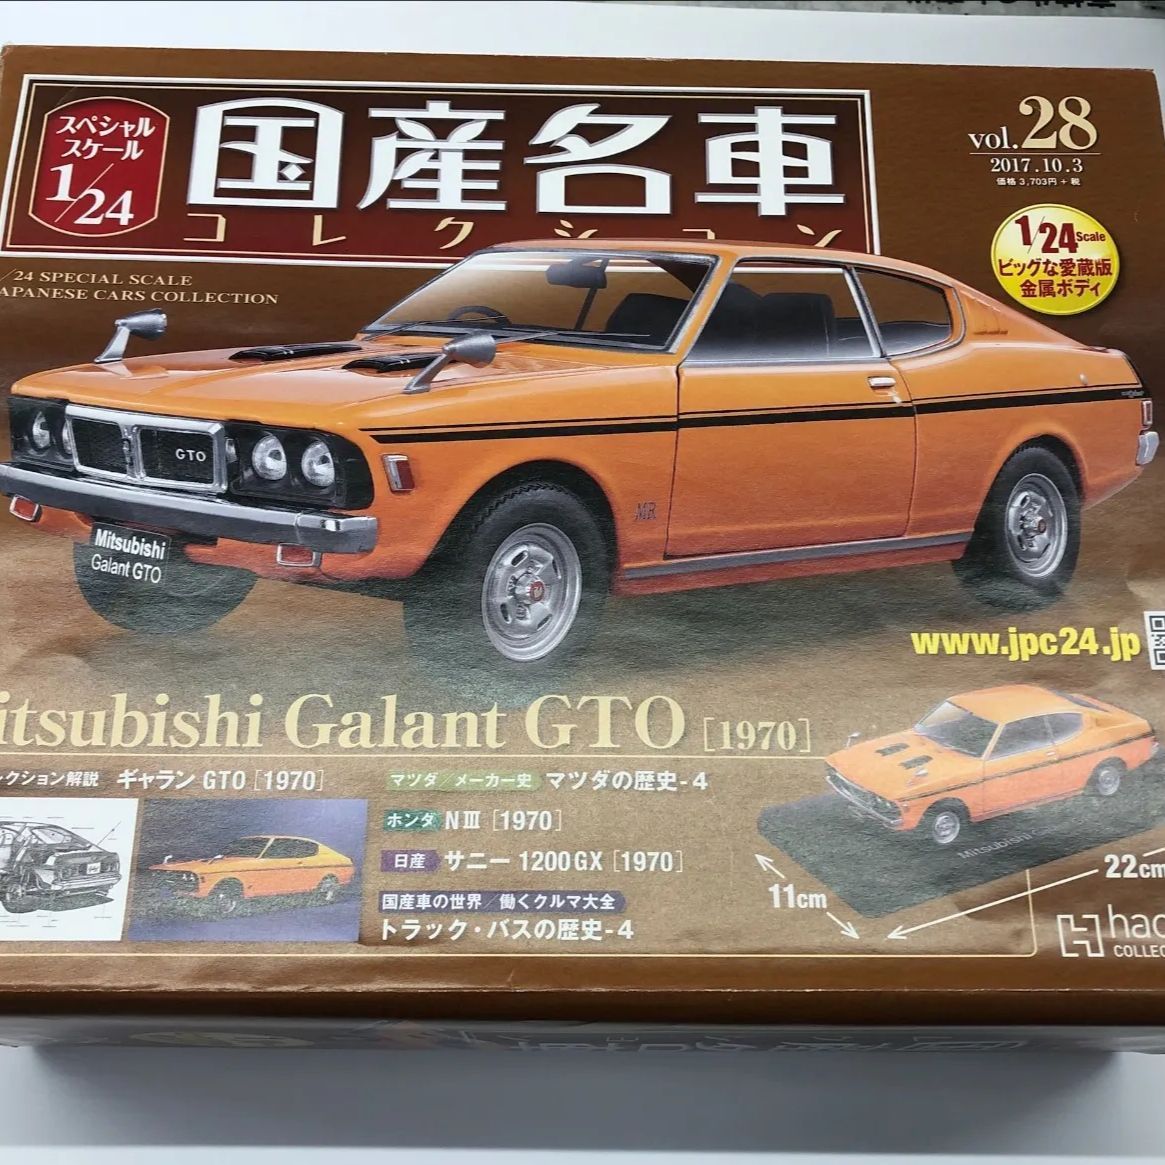 国産名車コレクション 三菱ギャランGTO 1970 vol.28 1/24 ミニカー 